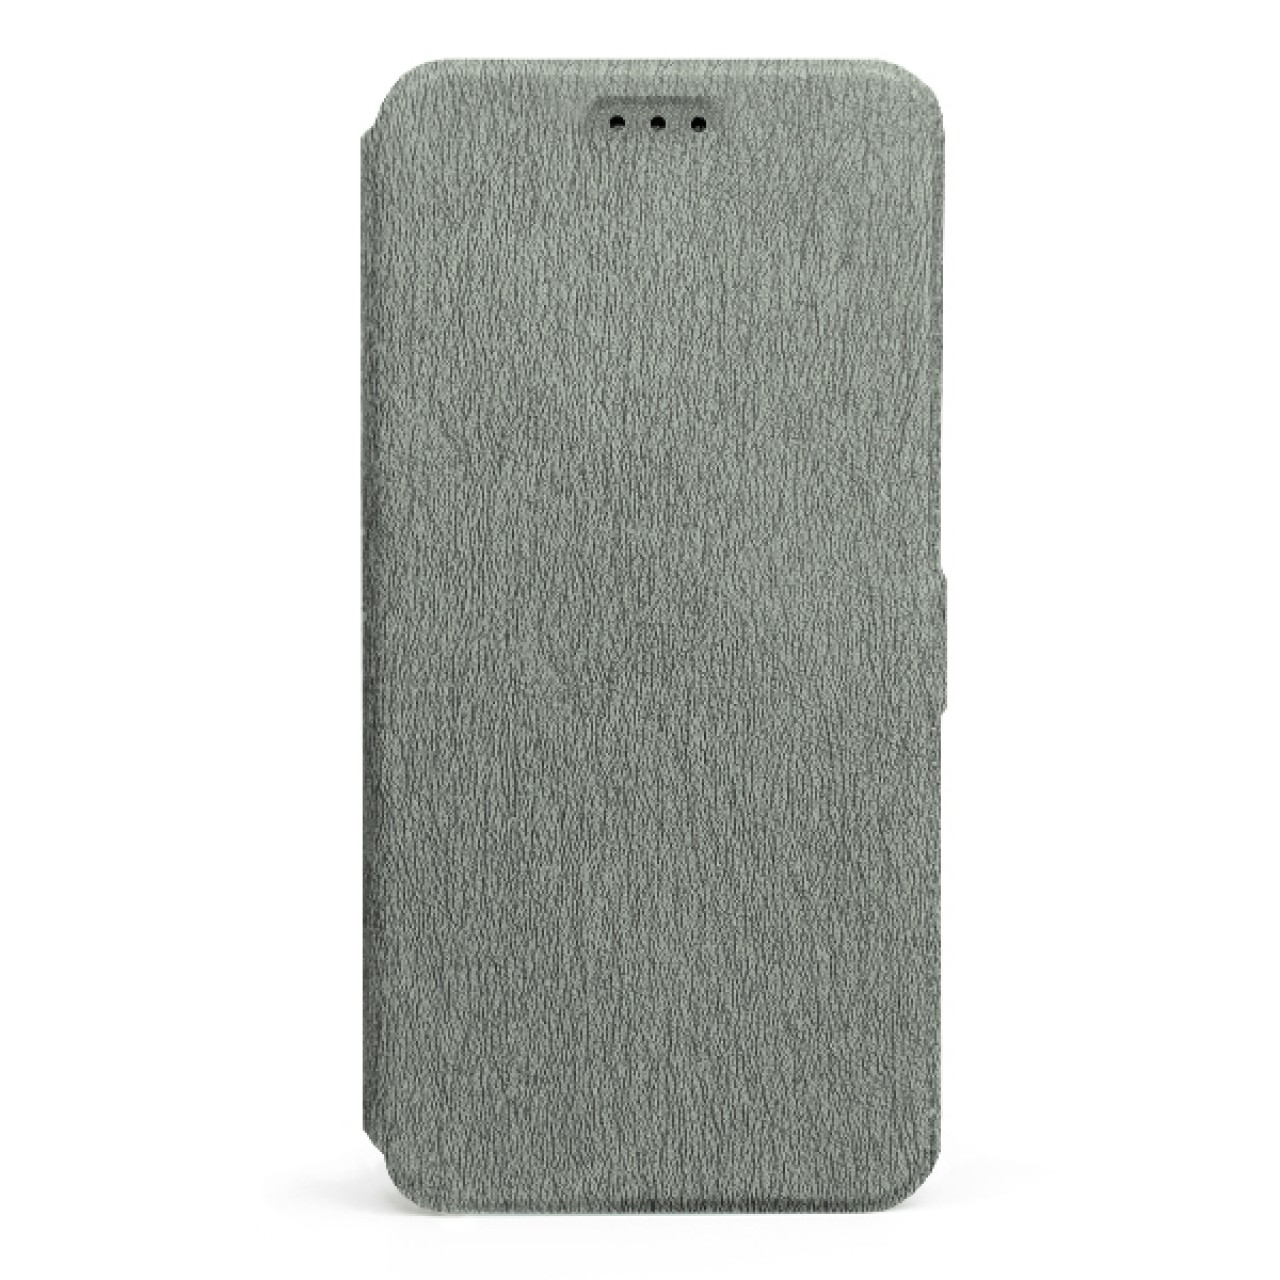 Θήκη Προστασίας Samsung Galaxy A20s - Flip Case - Grey